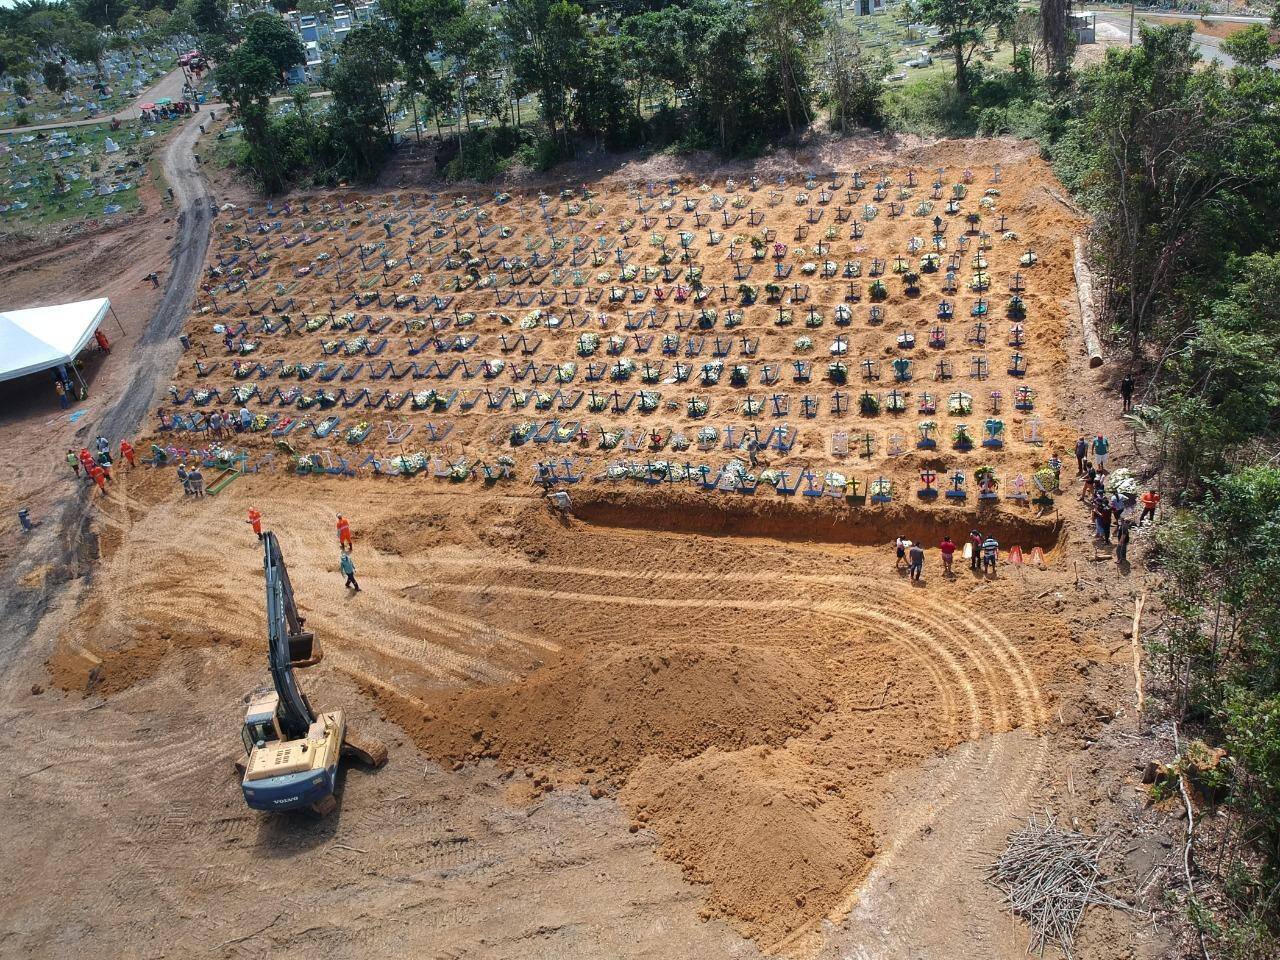 Valas comuns foram abertas no cemitério de Manaus para enterrar as vítimas da Covid-19